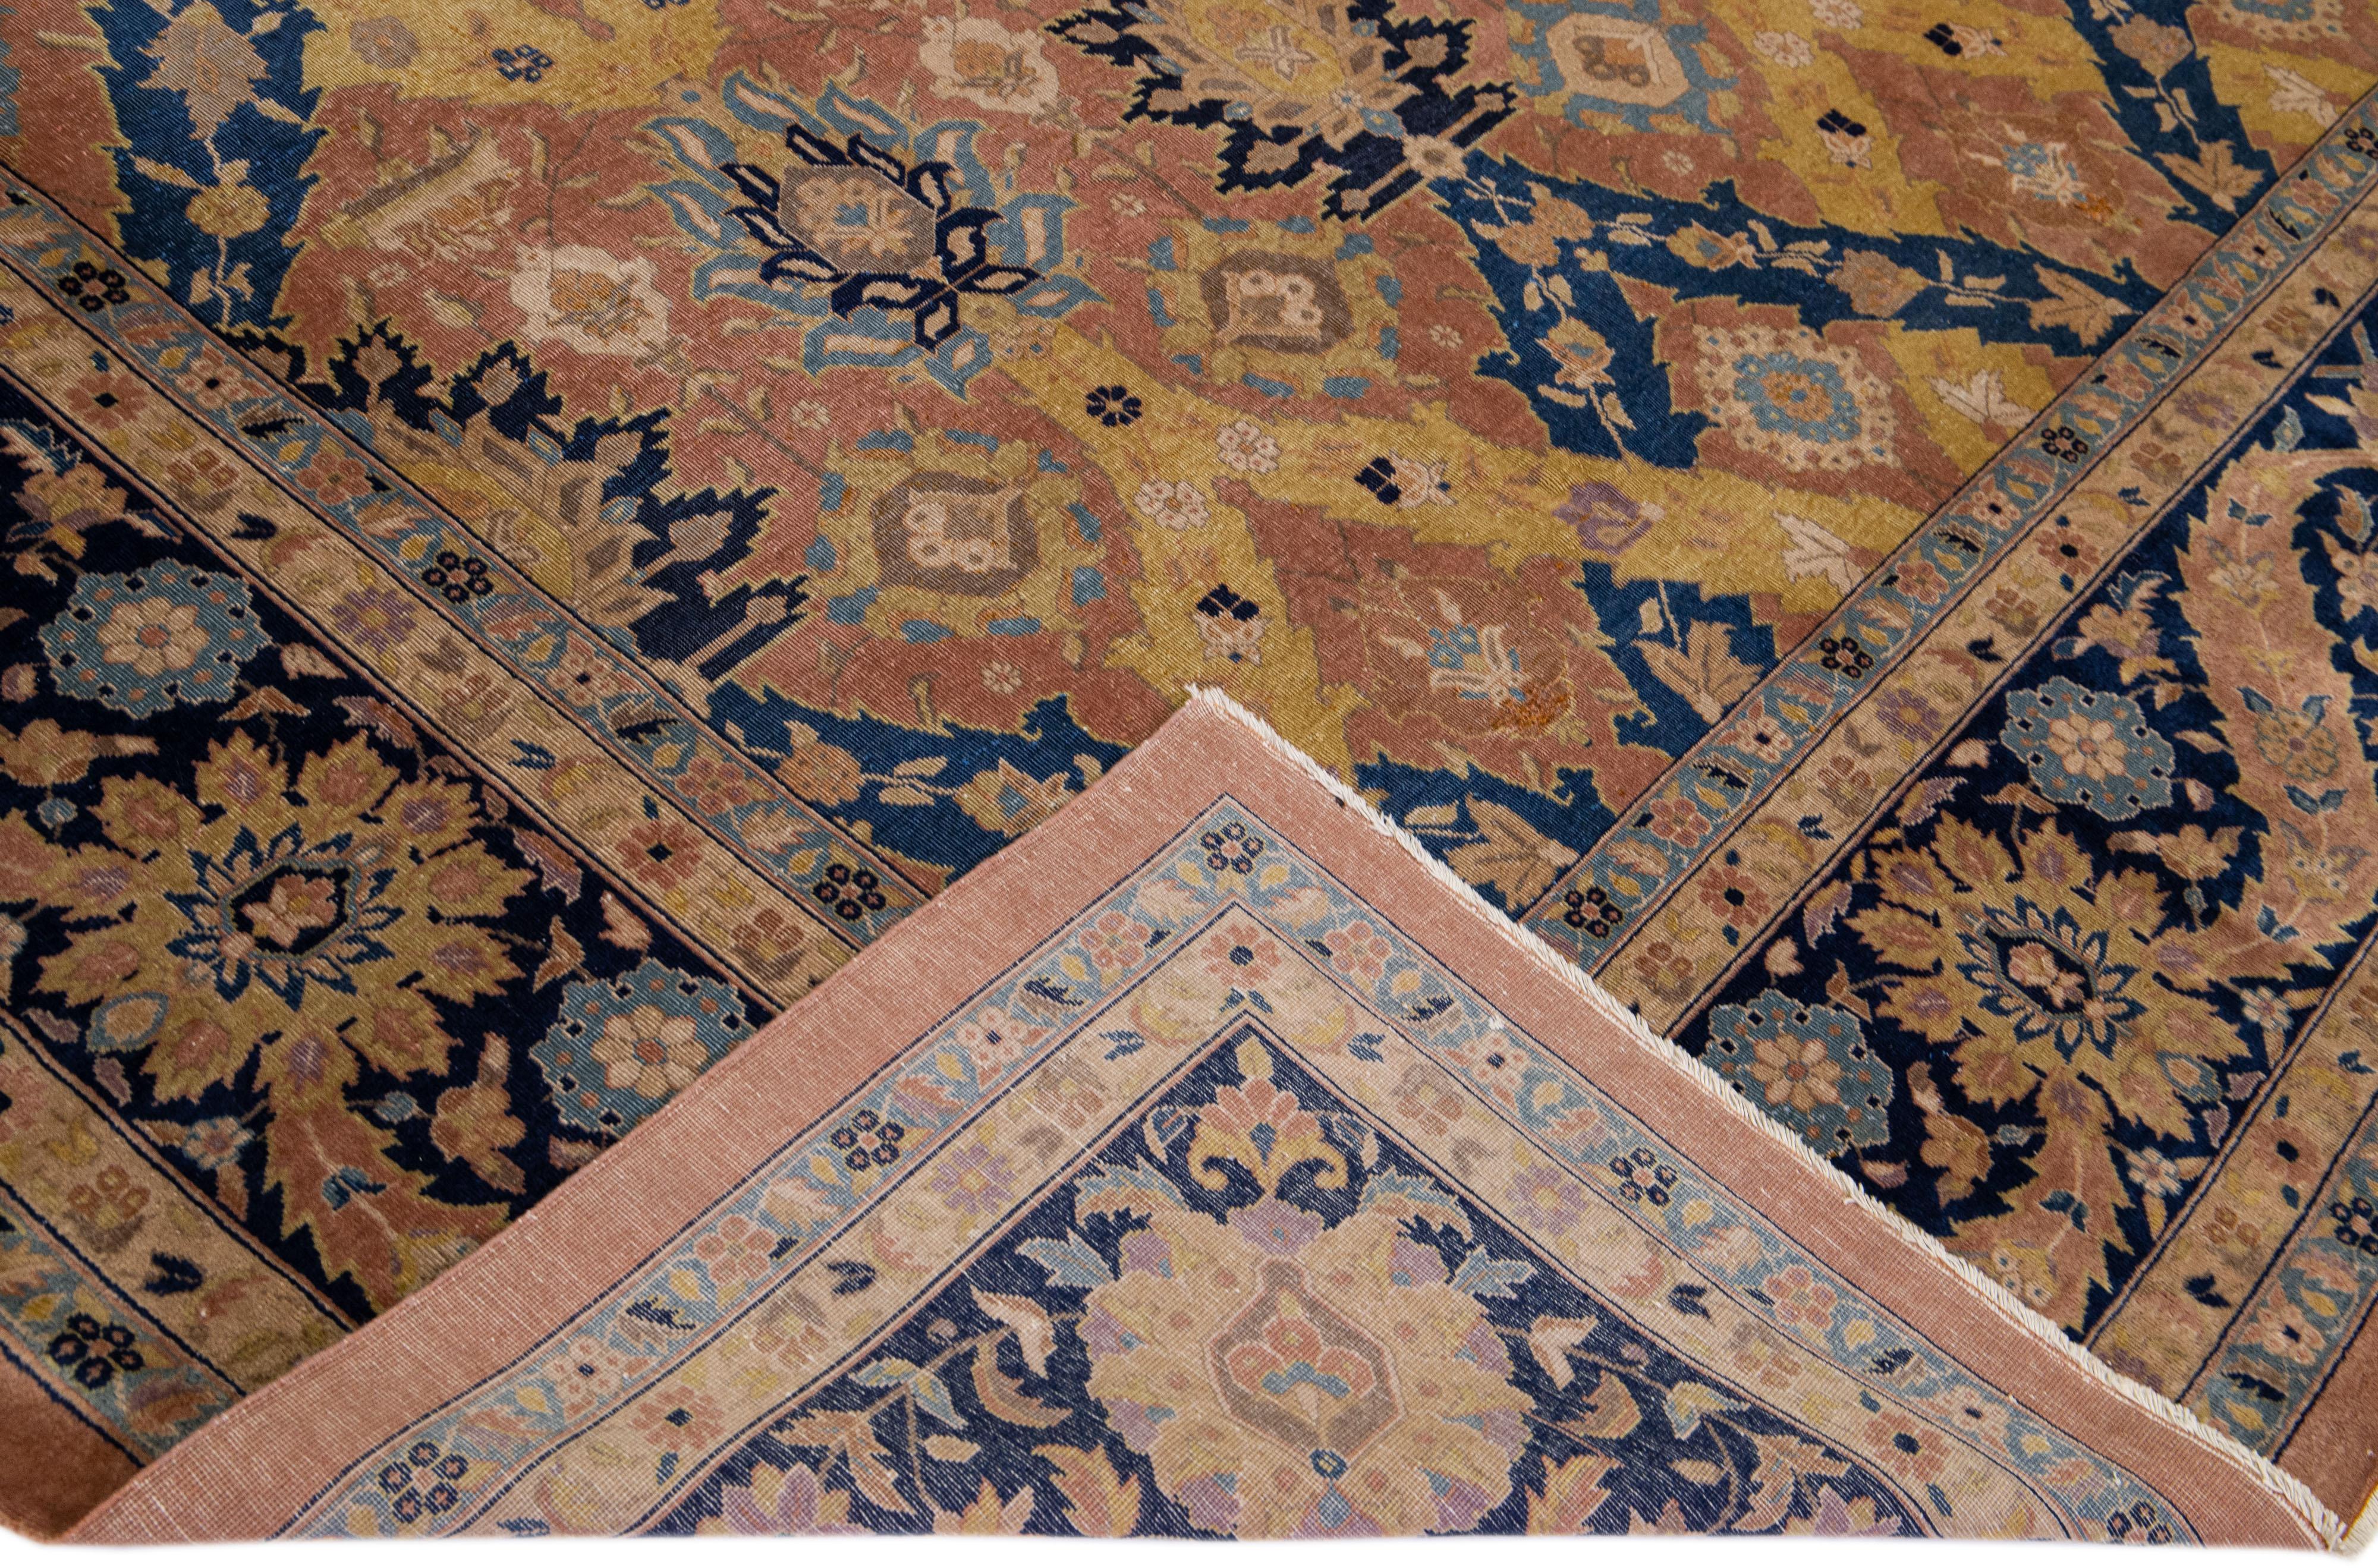 Magnifique tapis antique Agra en laine nouée à la main avec un champ de pêche. Ce tapis indien présente des accents multicolores dans un magnifique motif floral géométrique.

Ce tapis mesure : 11'5